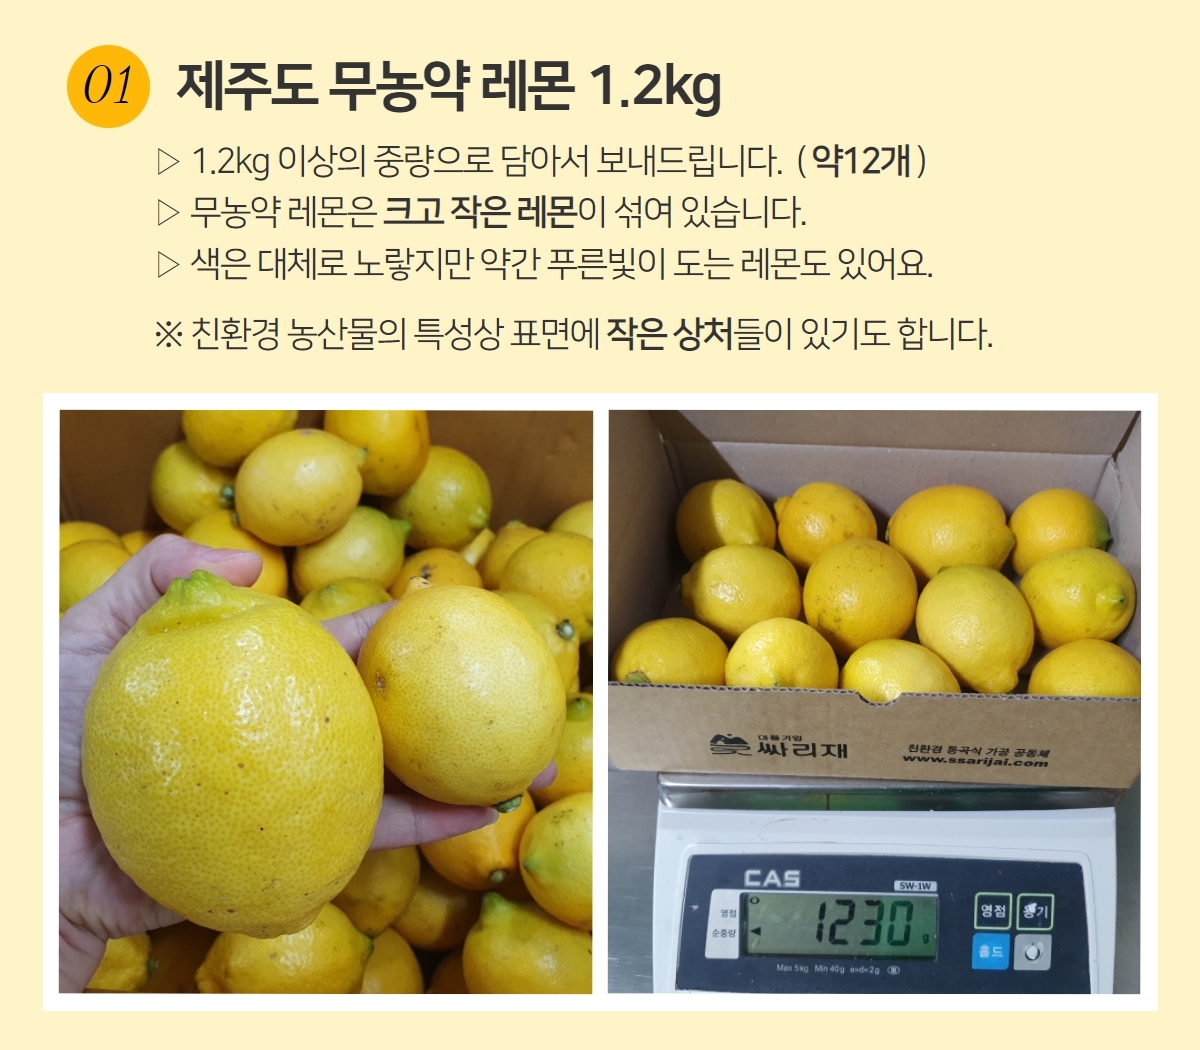 국내산 무농약 레몬을 수확한 후 크기를 비교한 사진